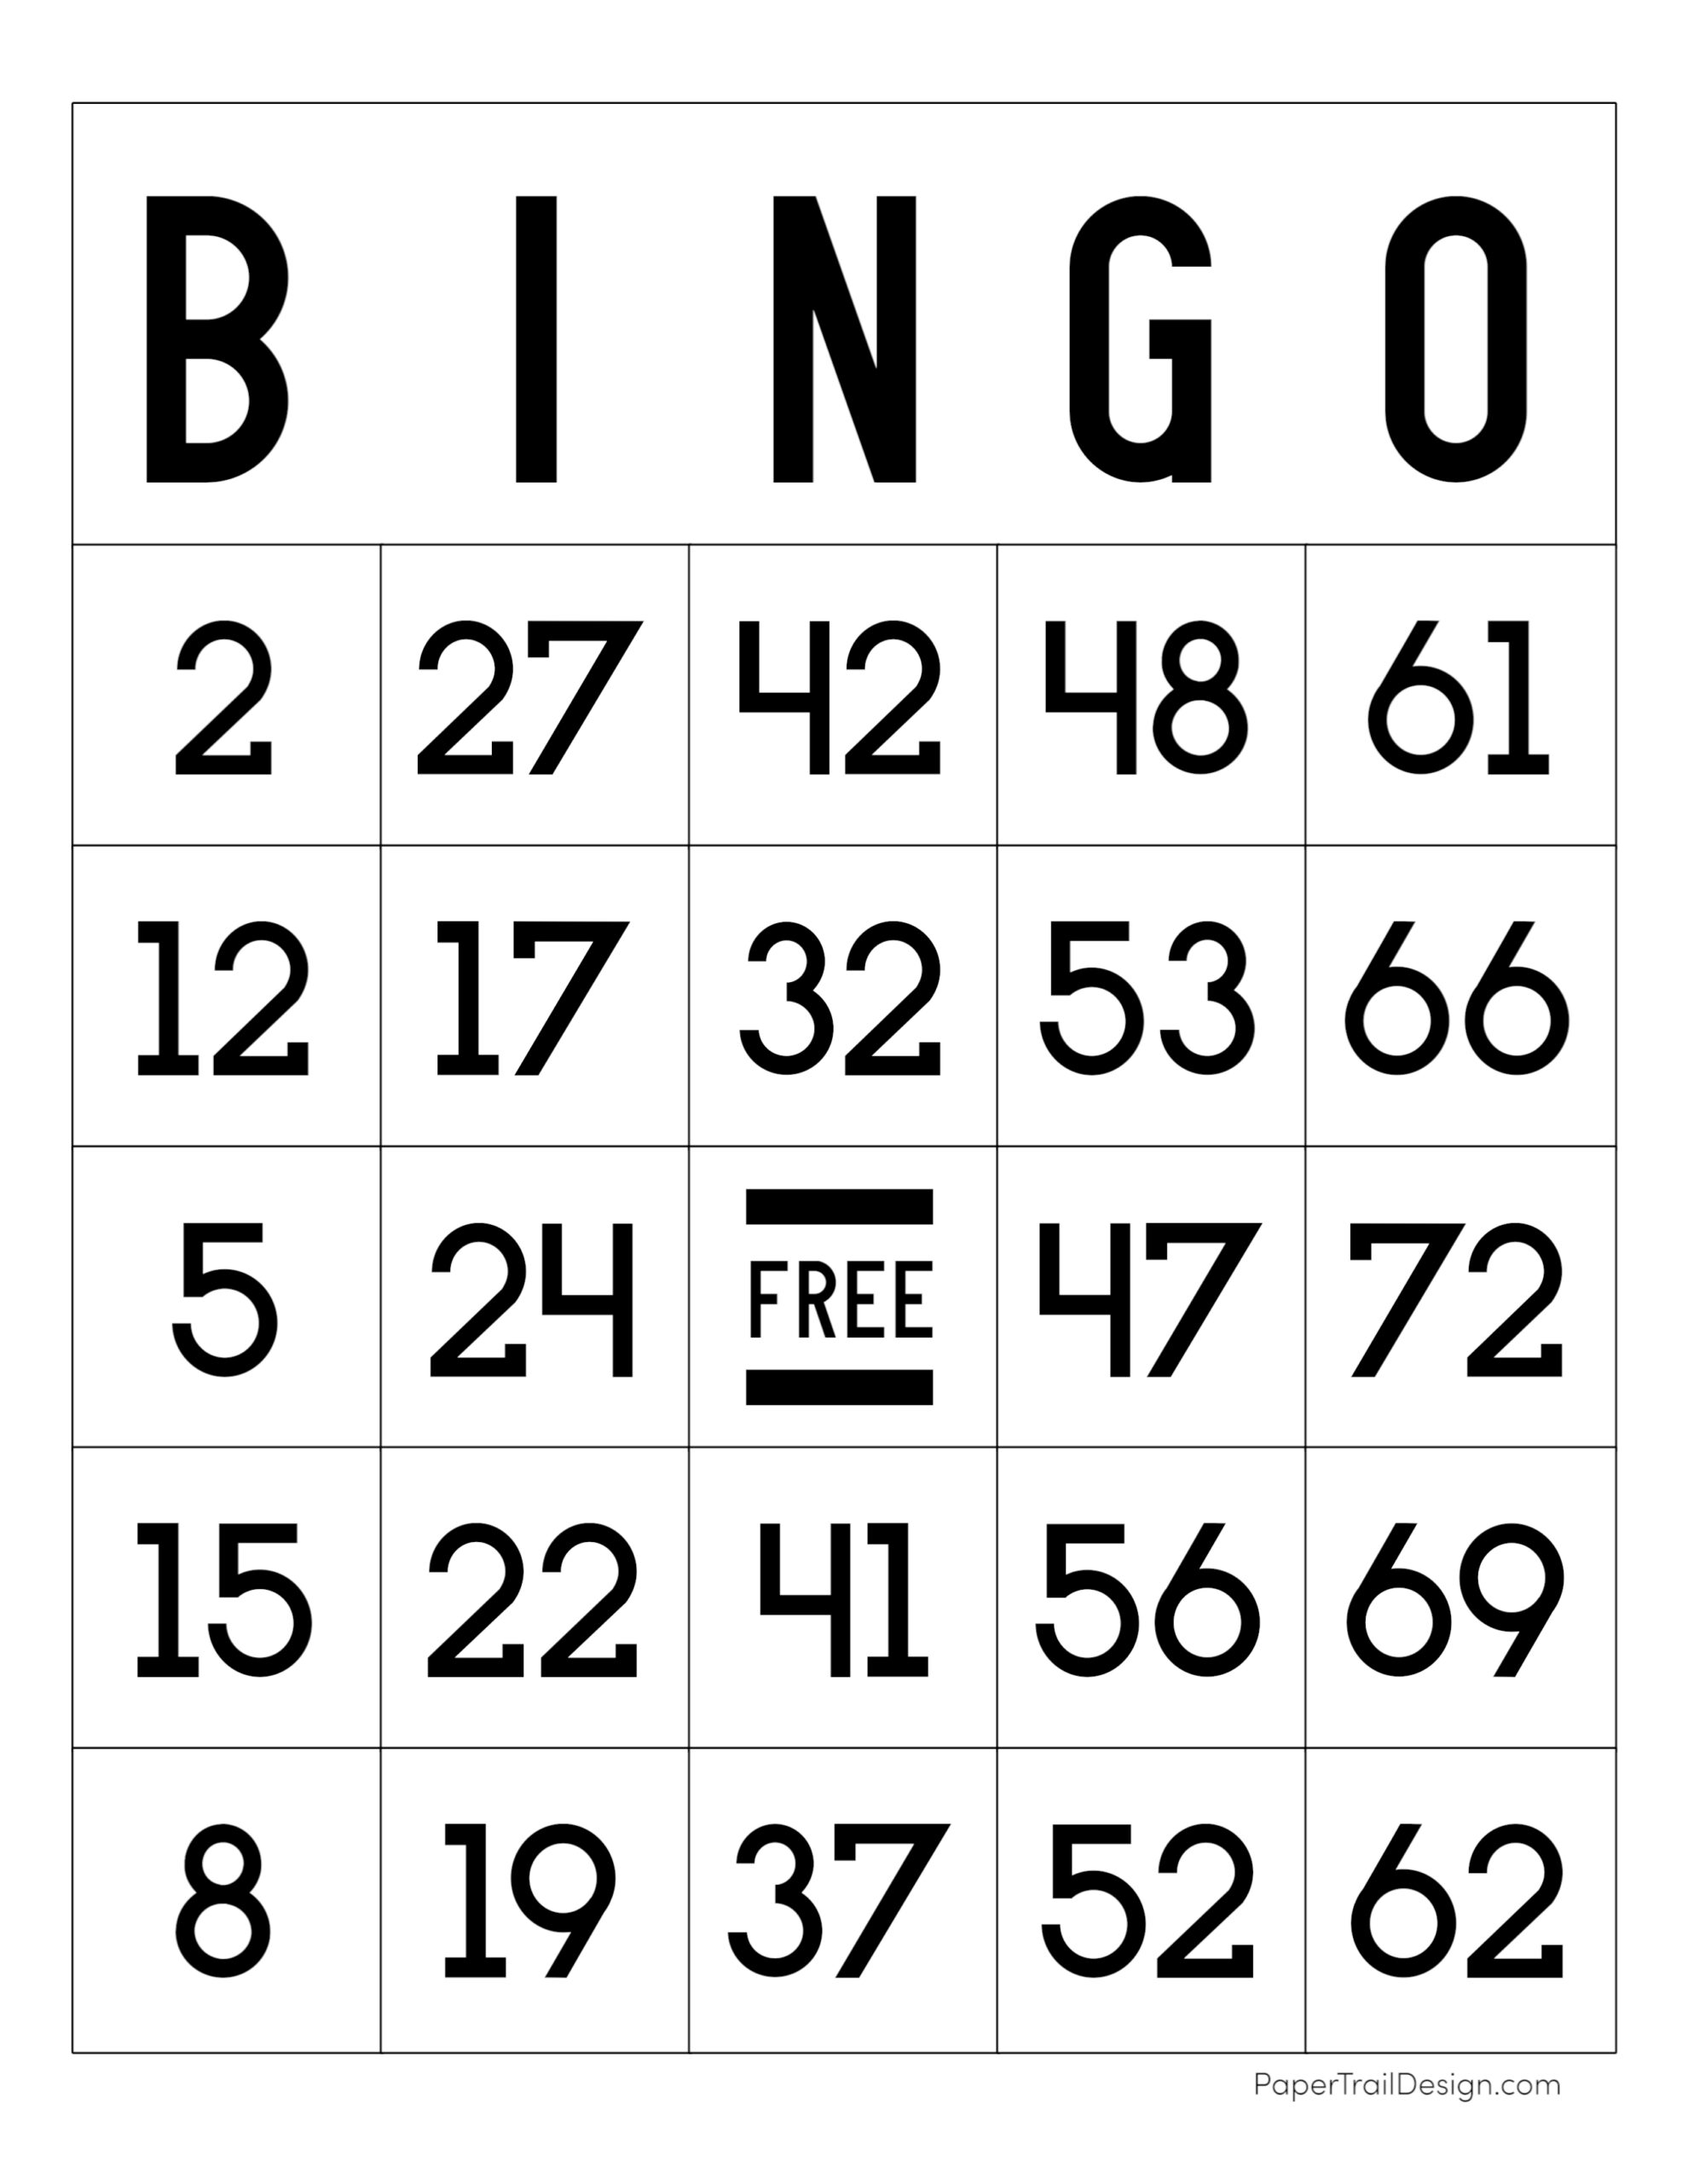 bingo com bônus grátis no cadastro